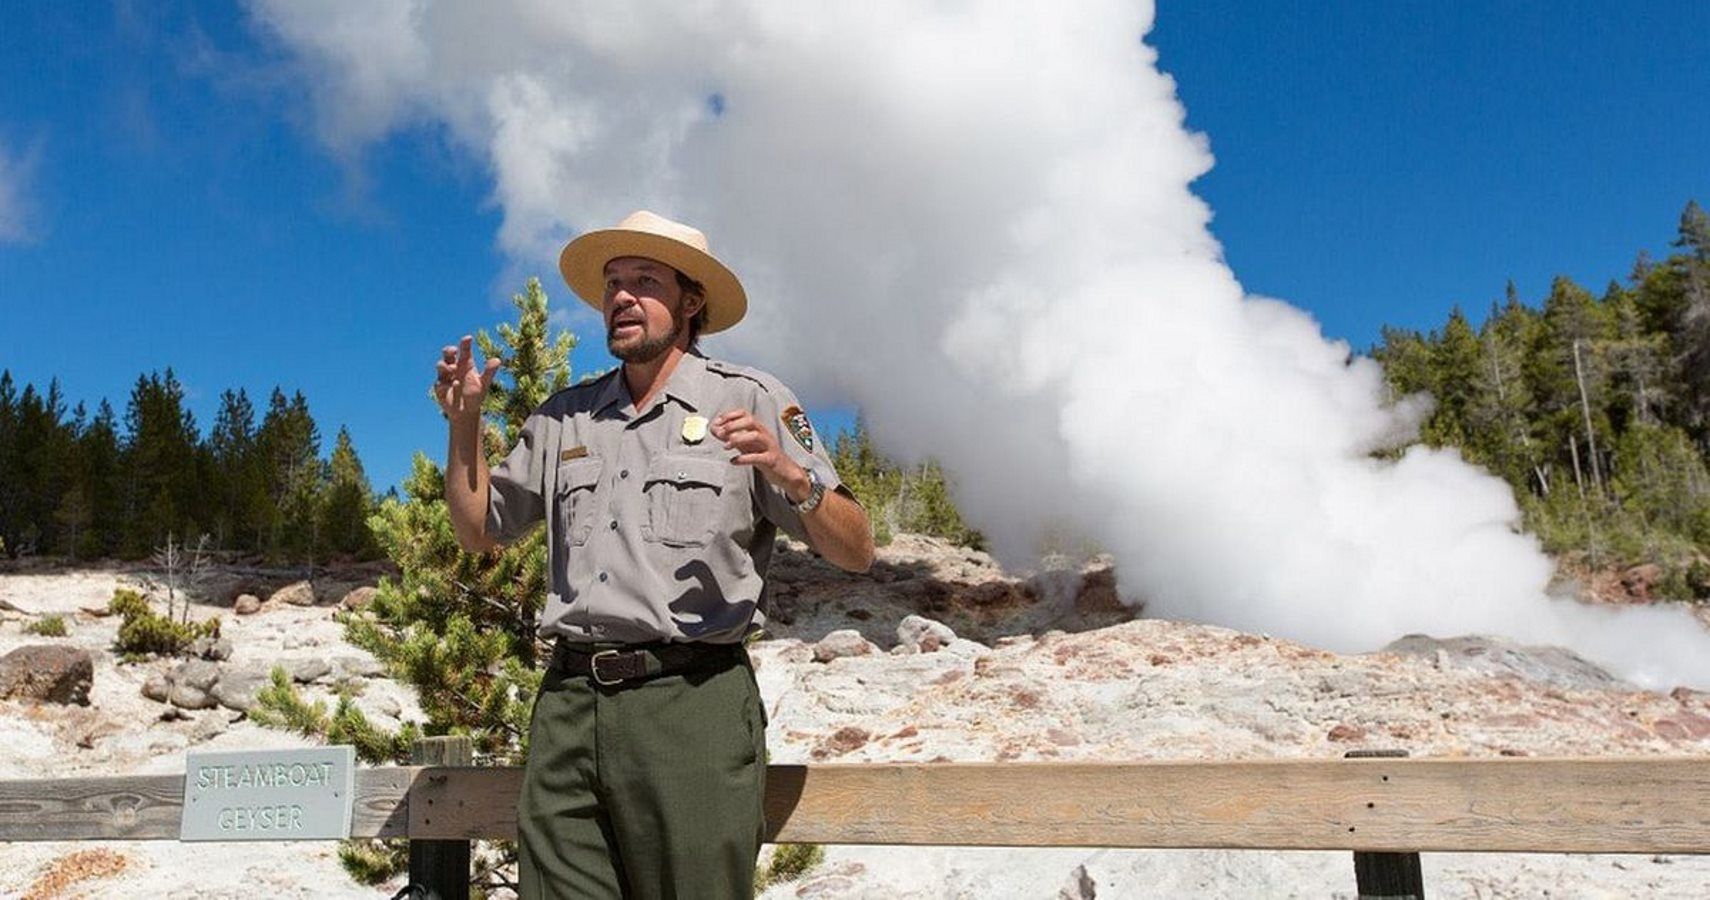 Um dos gêiseres do supervulcão de Yellowstone está excepcionalmente ativo, mas não se preocupe com isso, está tudo bem